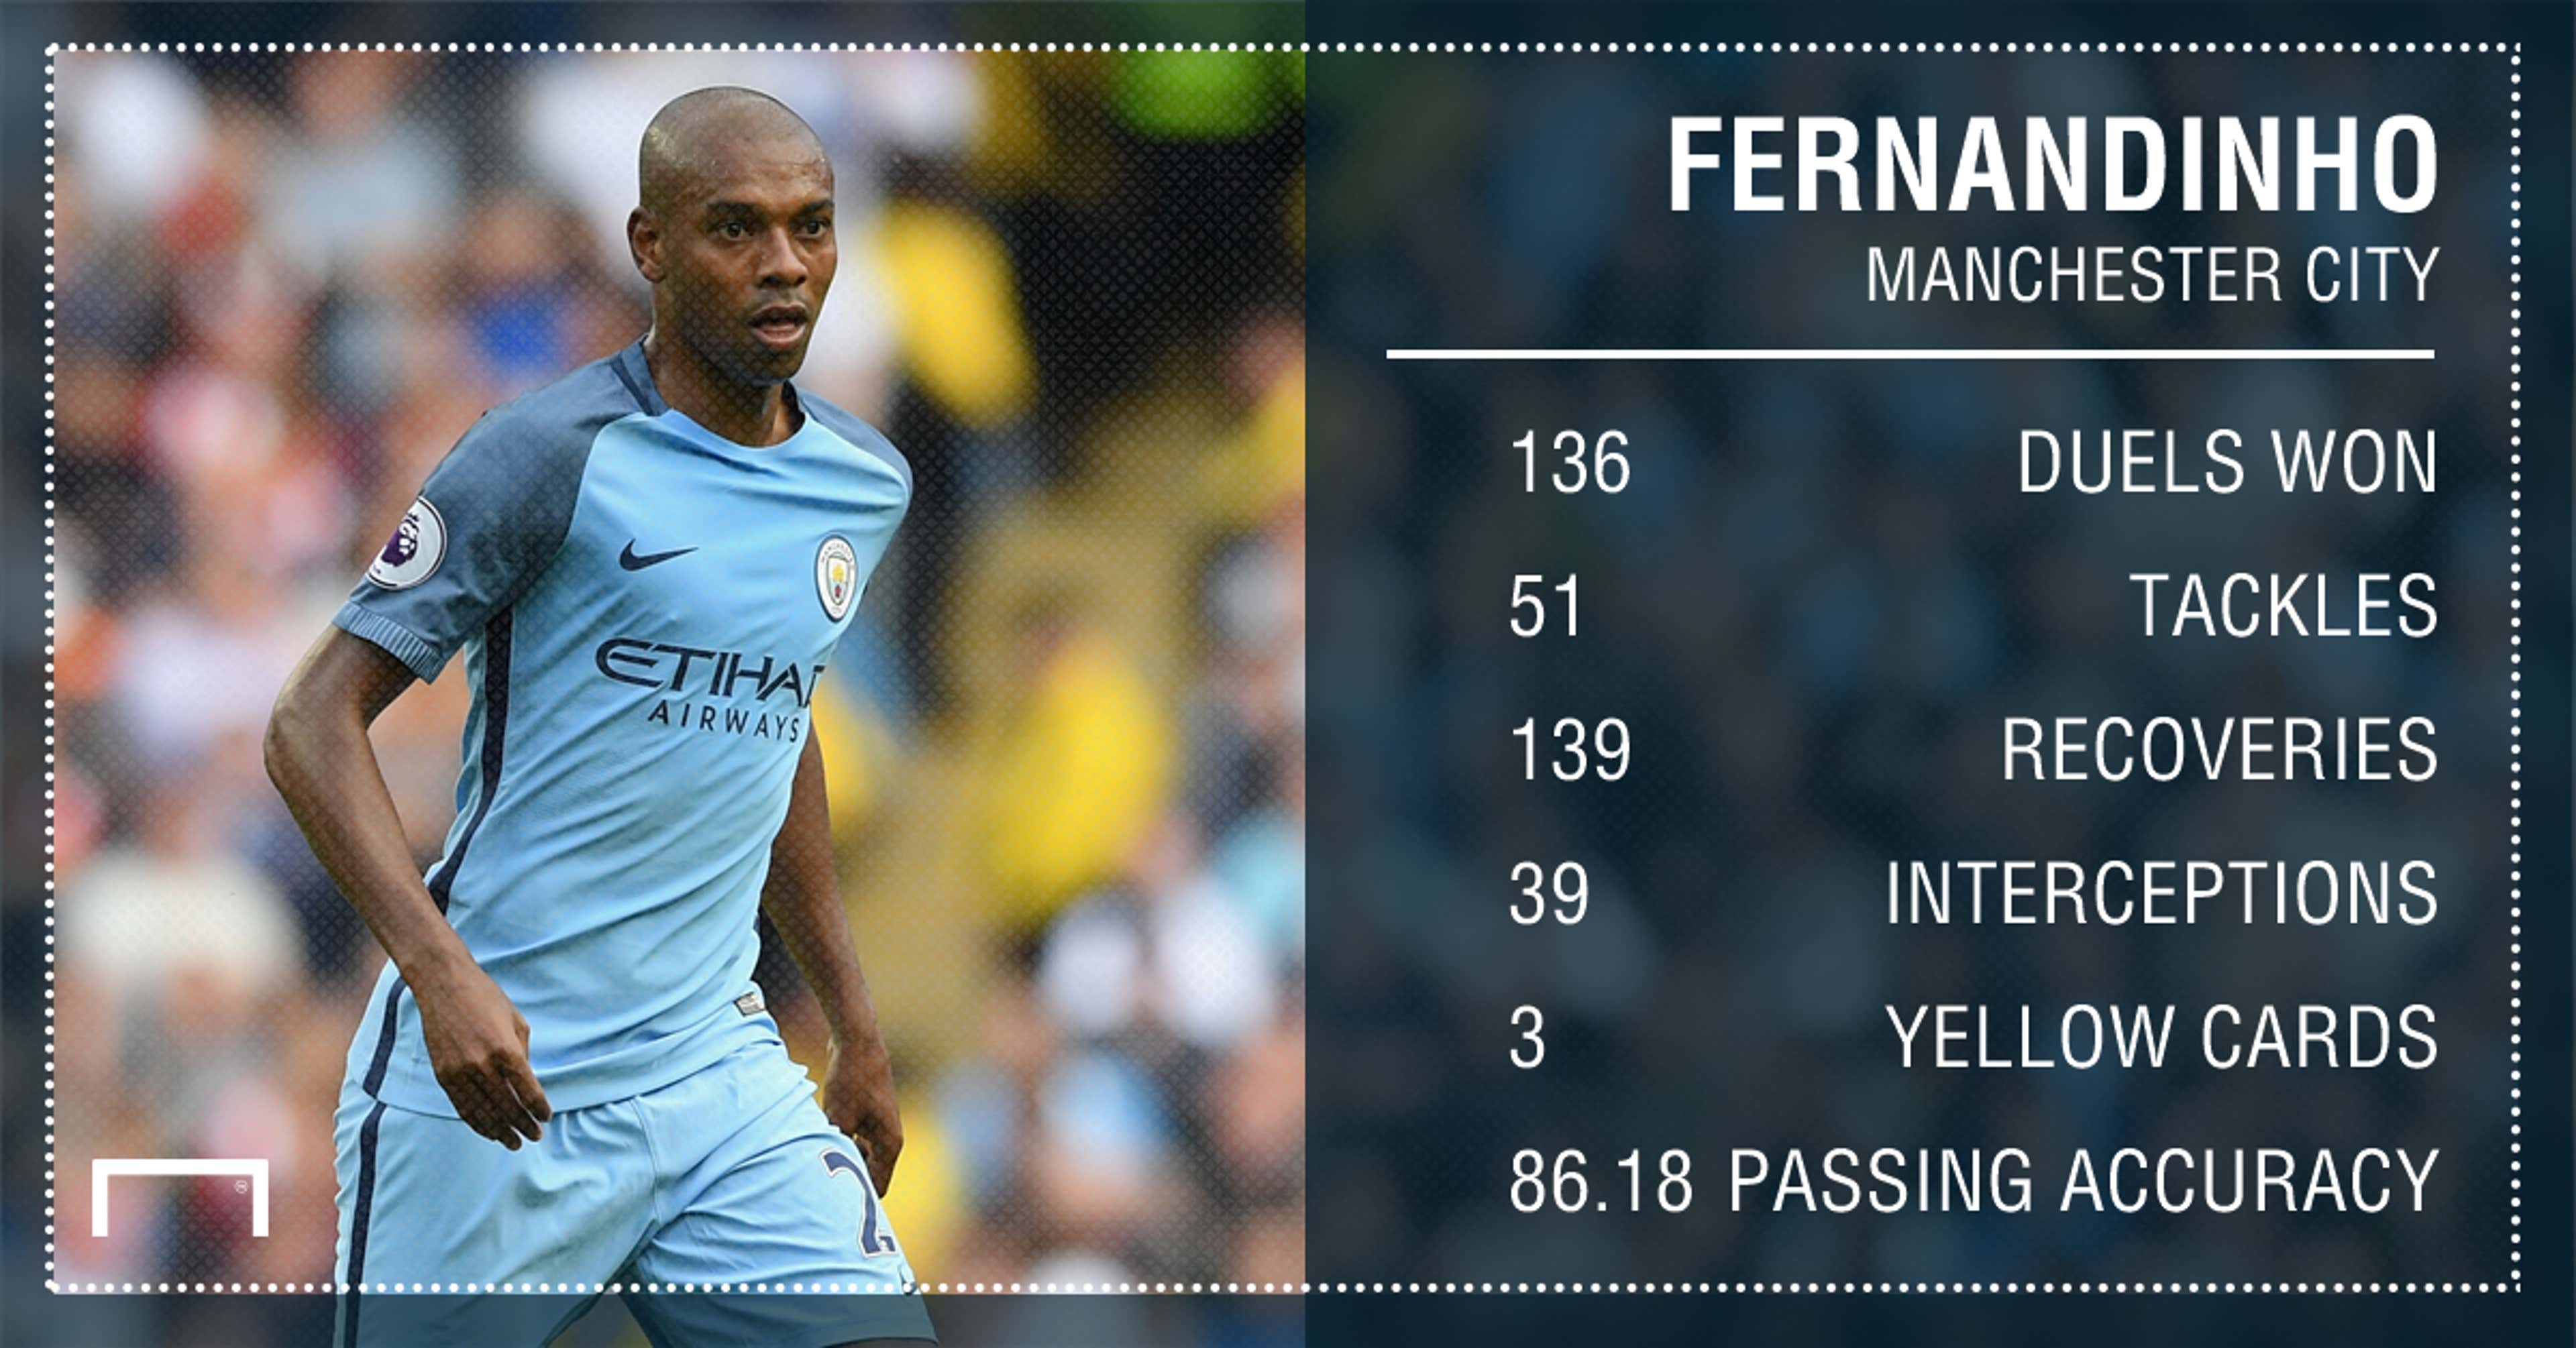 Fernandinho Manchester City stats